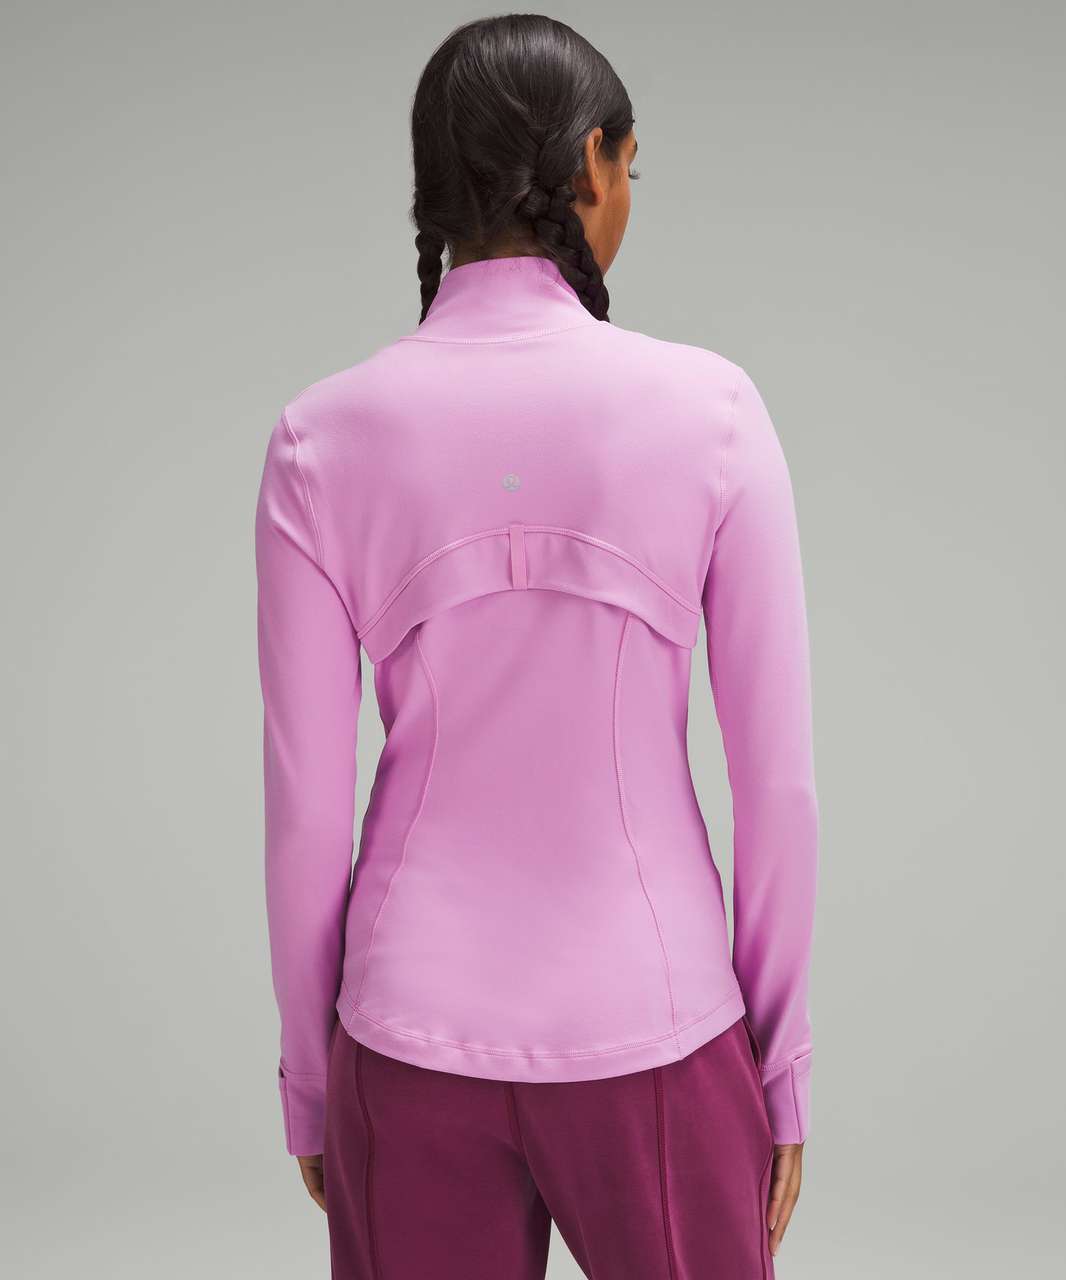 Lululemon Women's Define Jacket Luon-Various Colors-Size 4,6,8-New